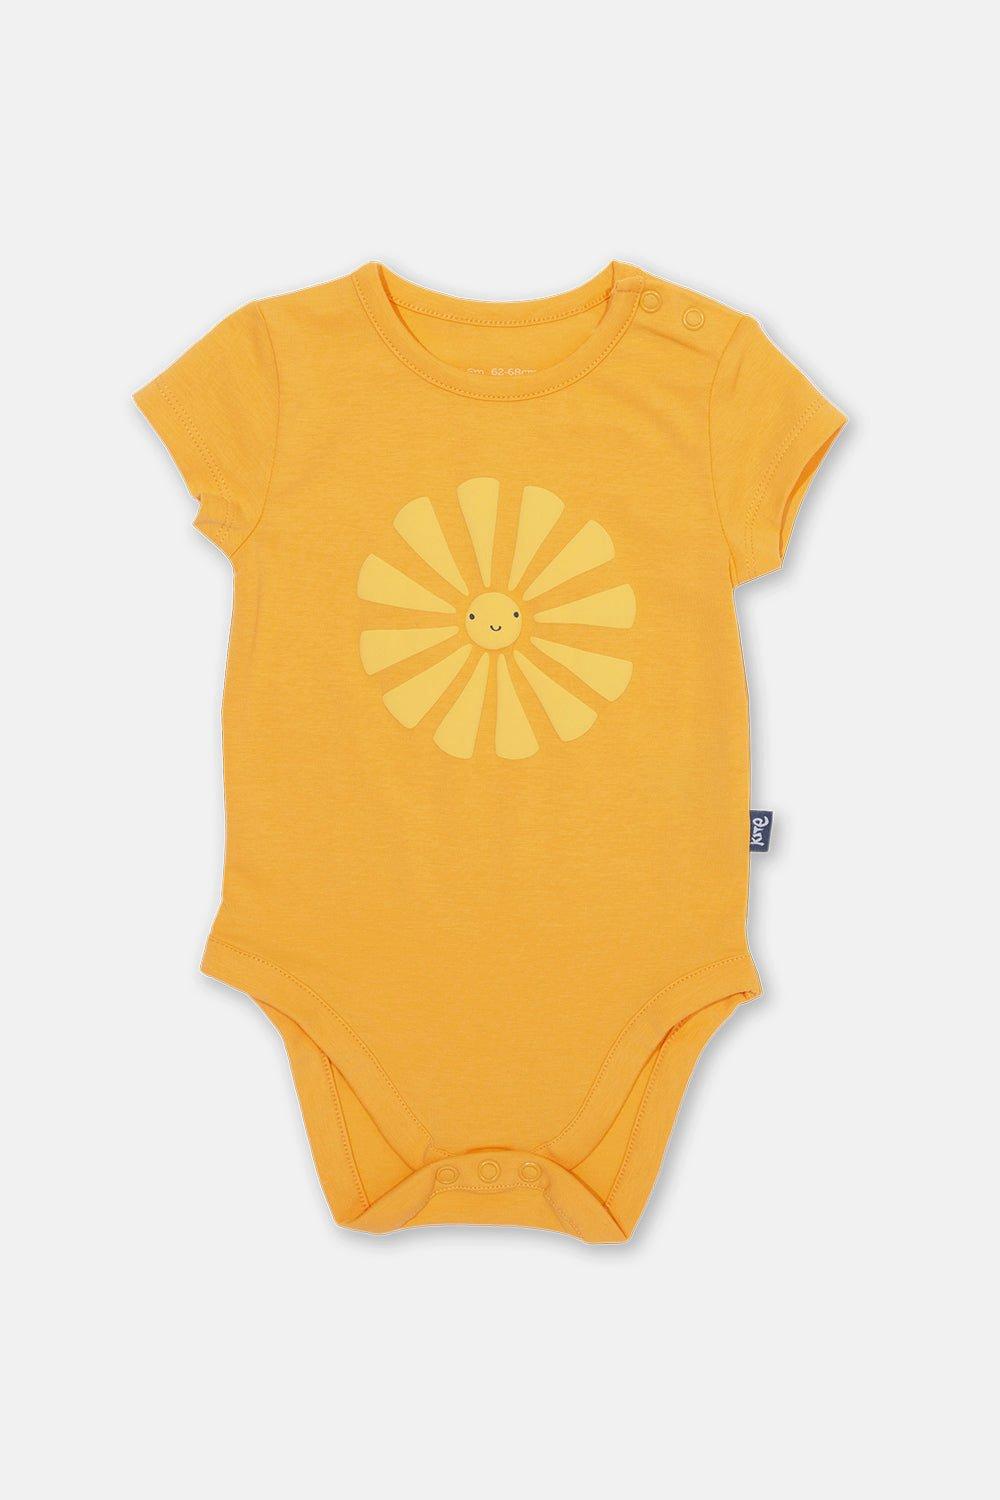 Baby Smiley Sun Bodysuit